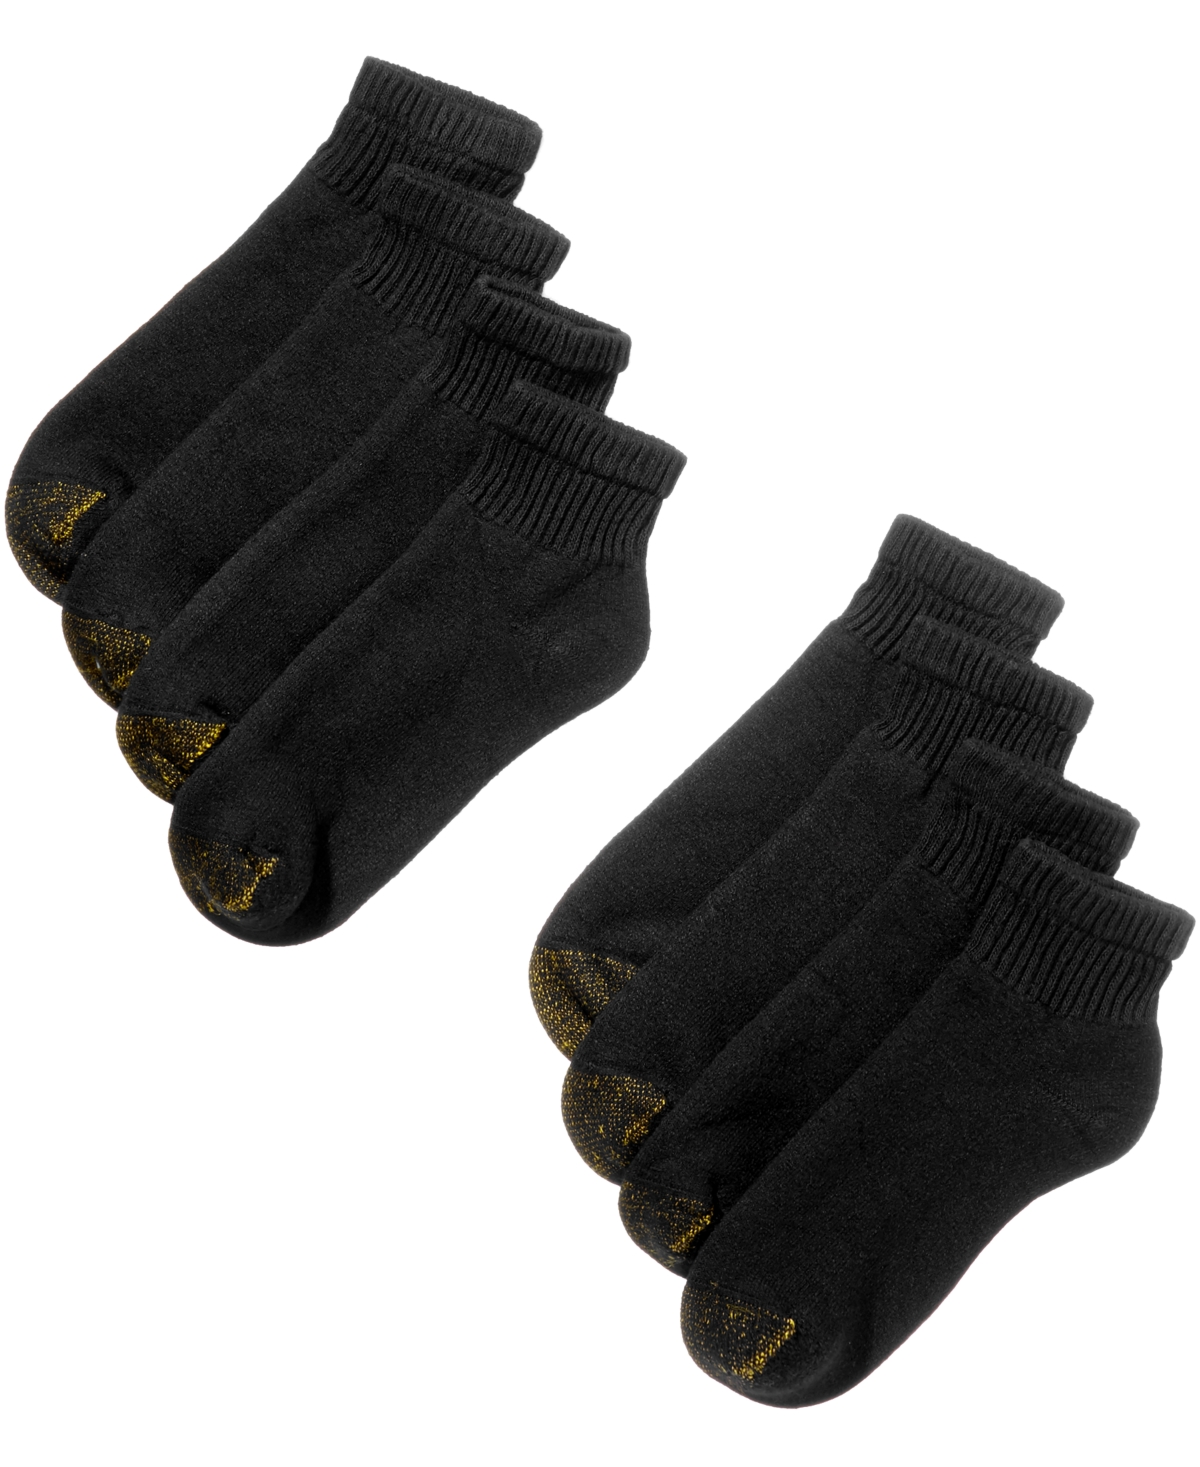 Men's 8-Pack Athletic Quarter Socks - Black